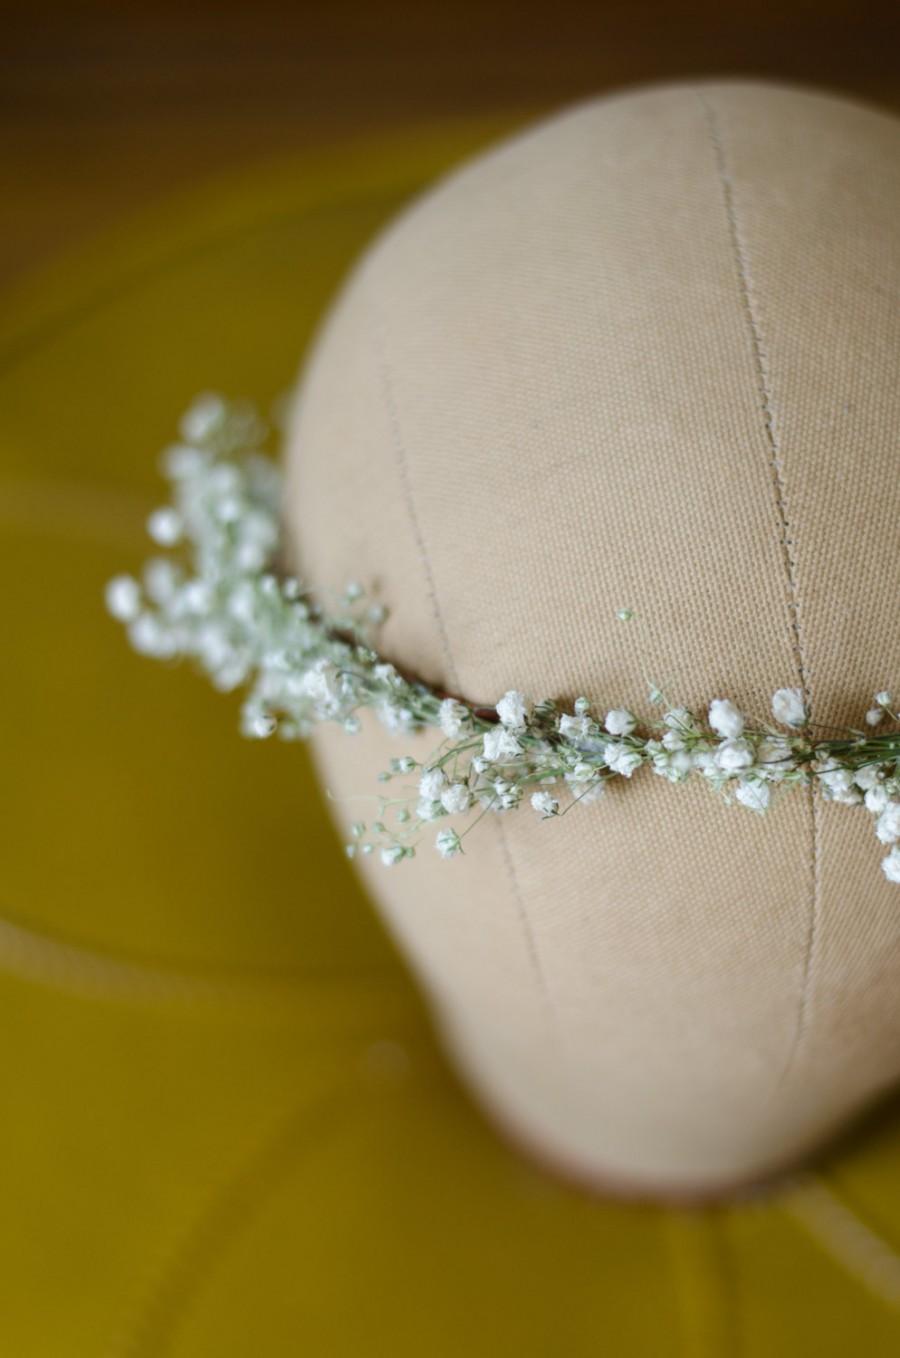 زفاف - Babys Breath Flower Crown / Halo / Hair Wreath with Real Dried Flowers - for Bride Bridal Wedding Party Engagement - THINNER Version